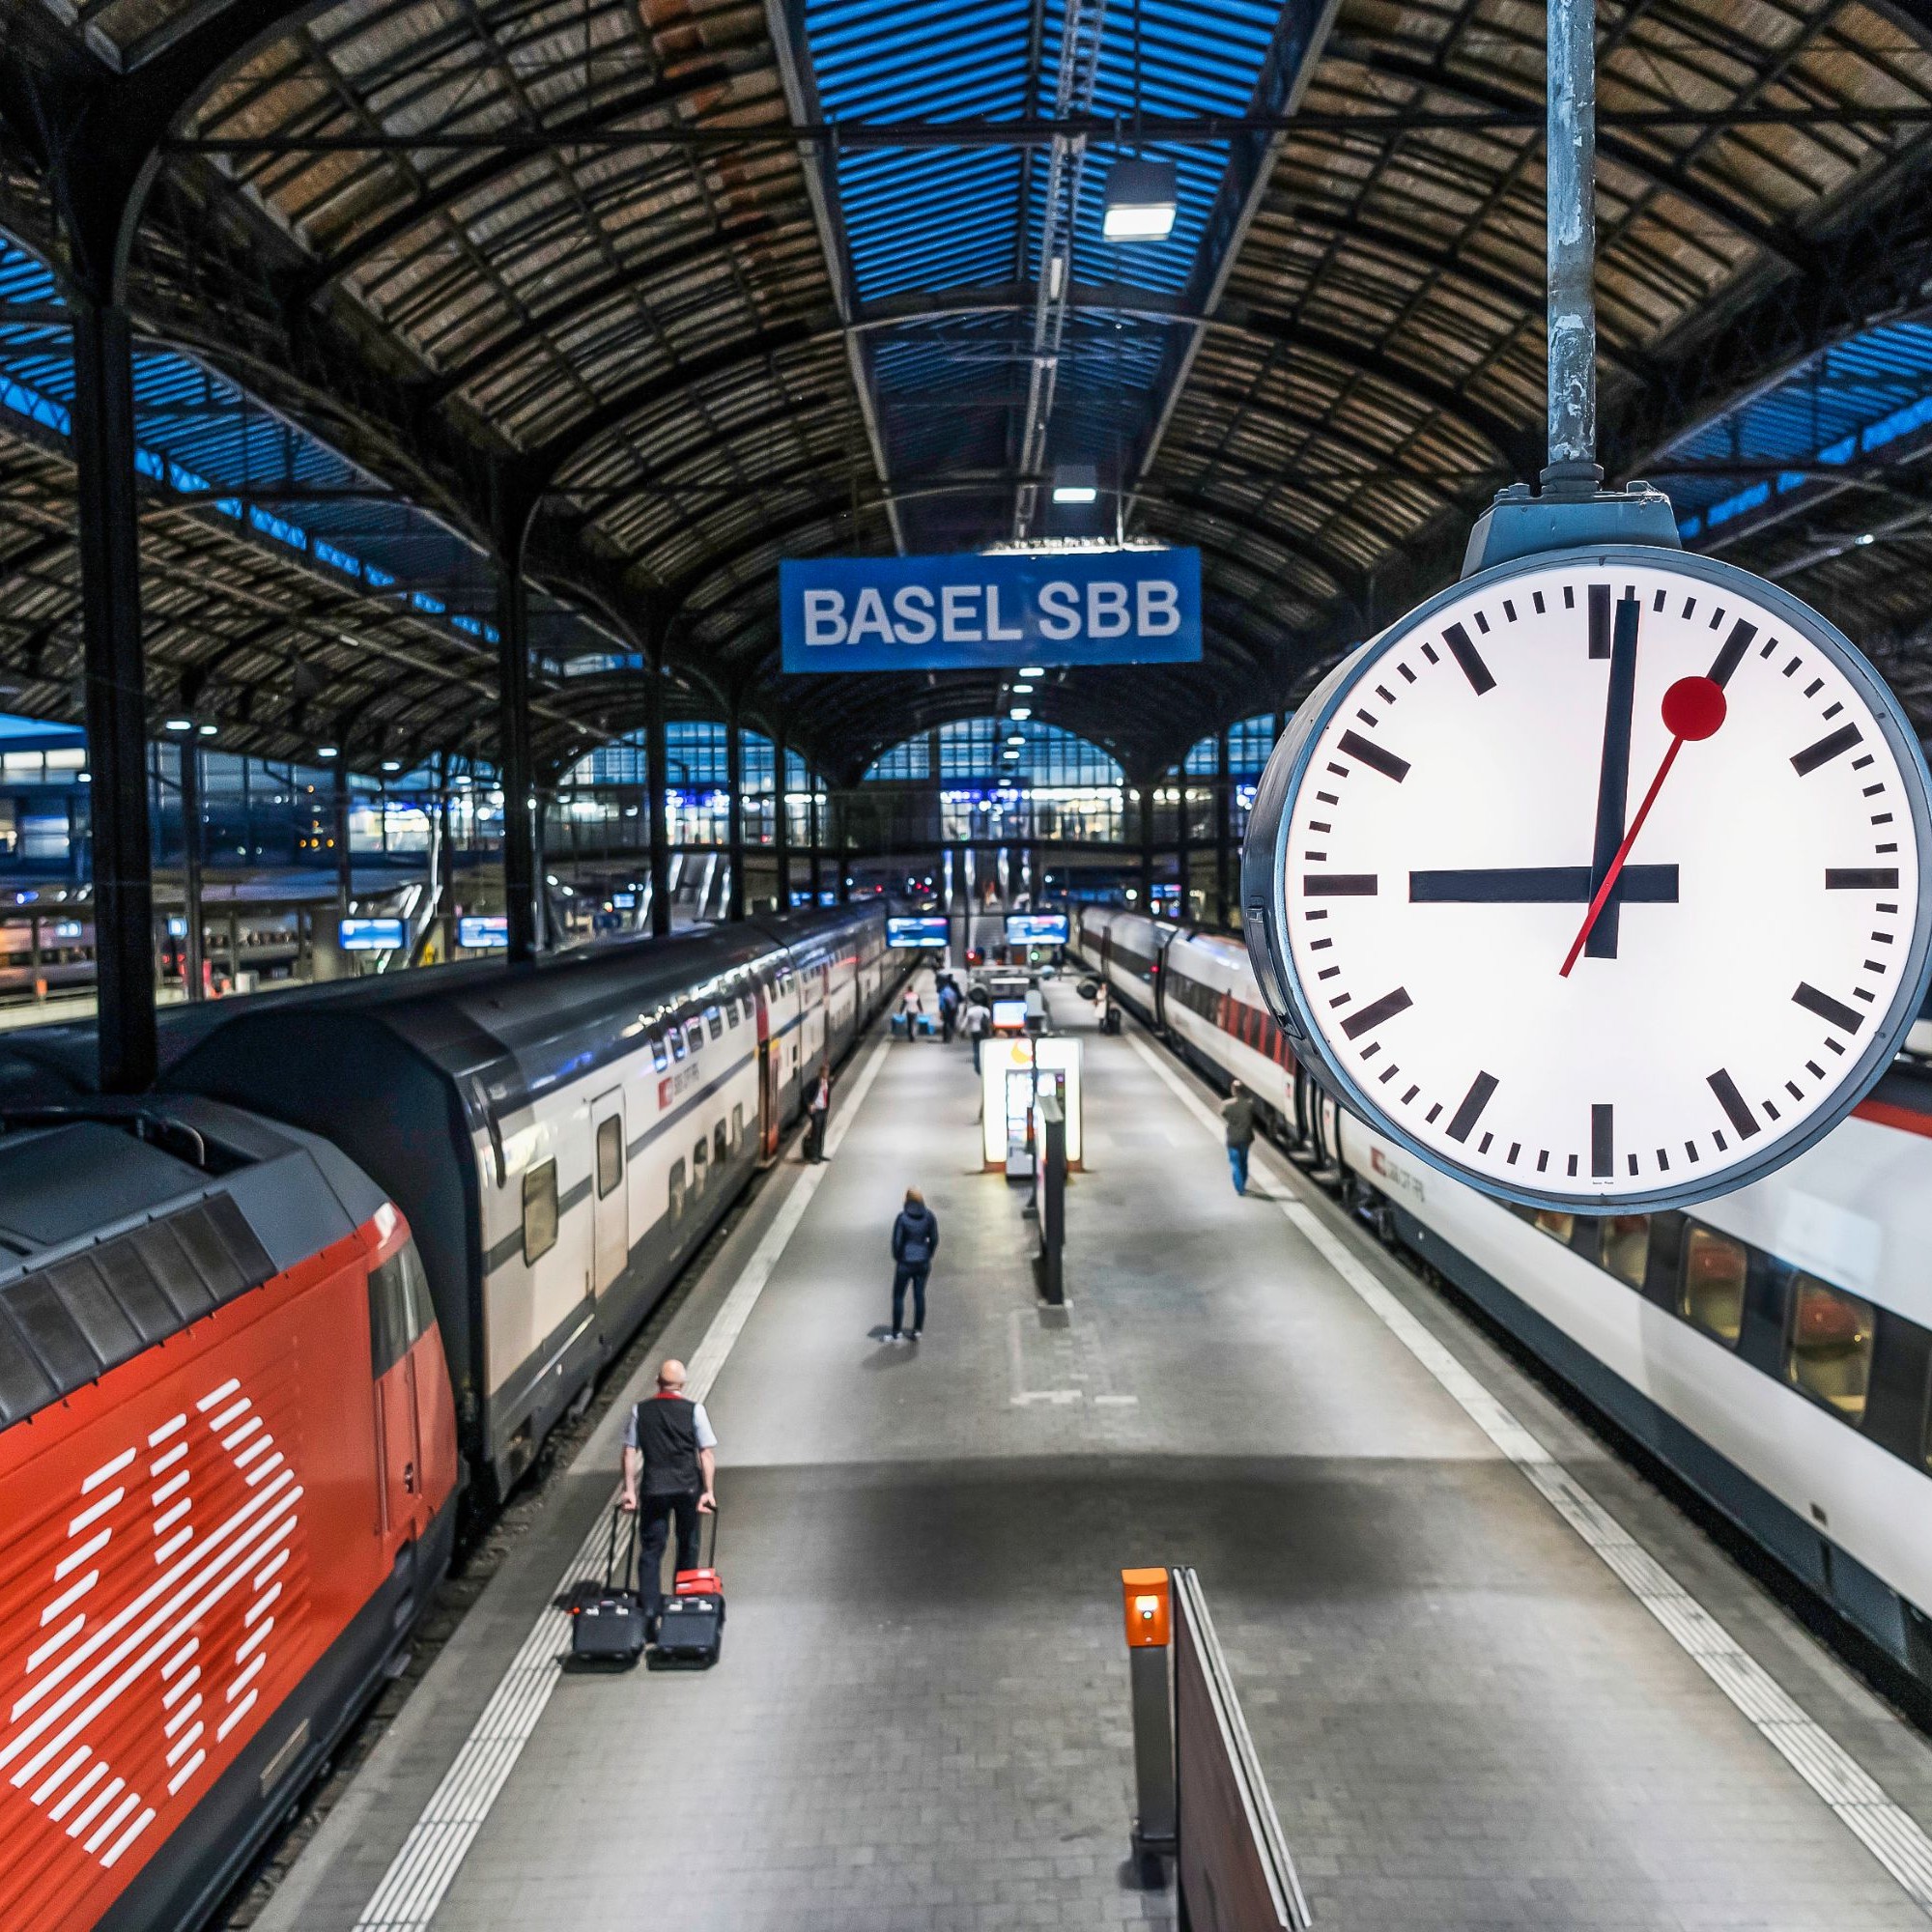 Die SBB hat Schweizer Designergeschichte geschrieben, die allgegenwärtig ist. Hier im Bahnhof Basel mit der Bahnhofsuhr, dem weissen Logo auf rotem Grund und mit der Schrift auf dunkelblauem Grund.